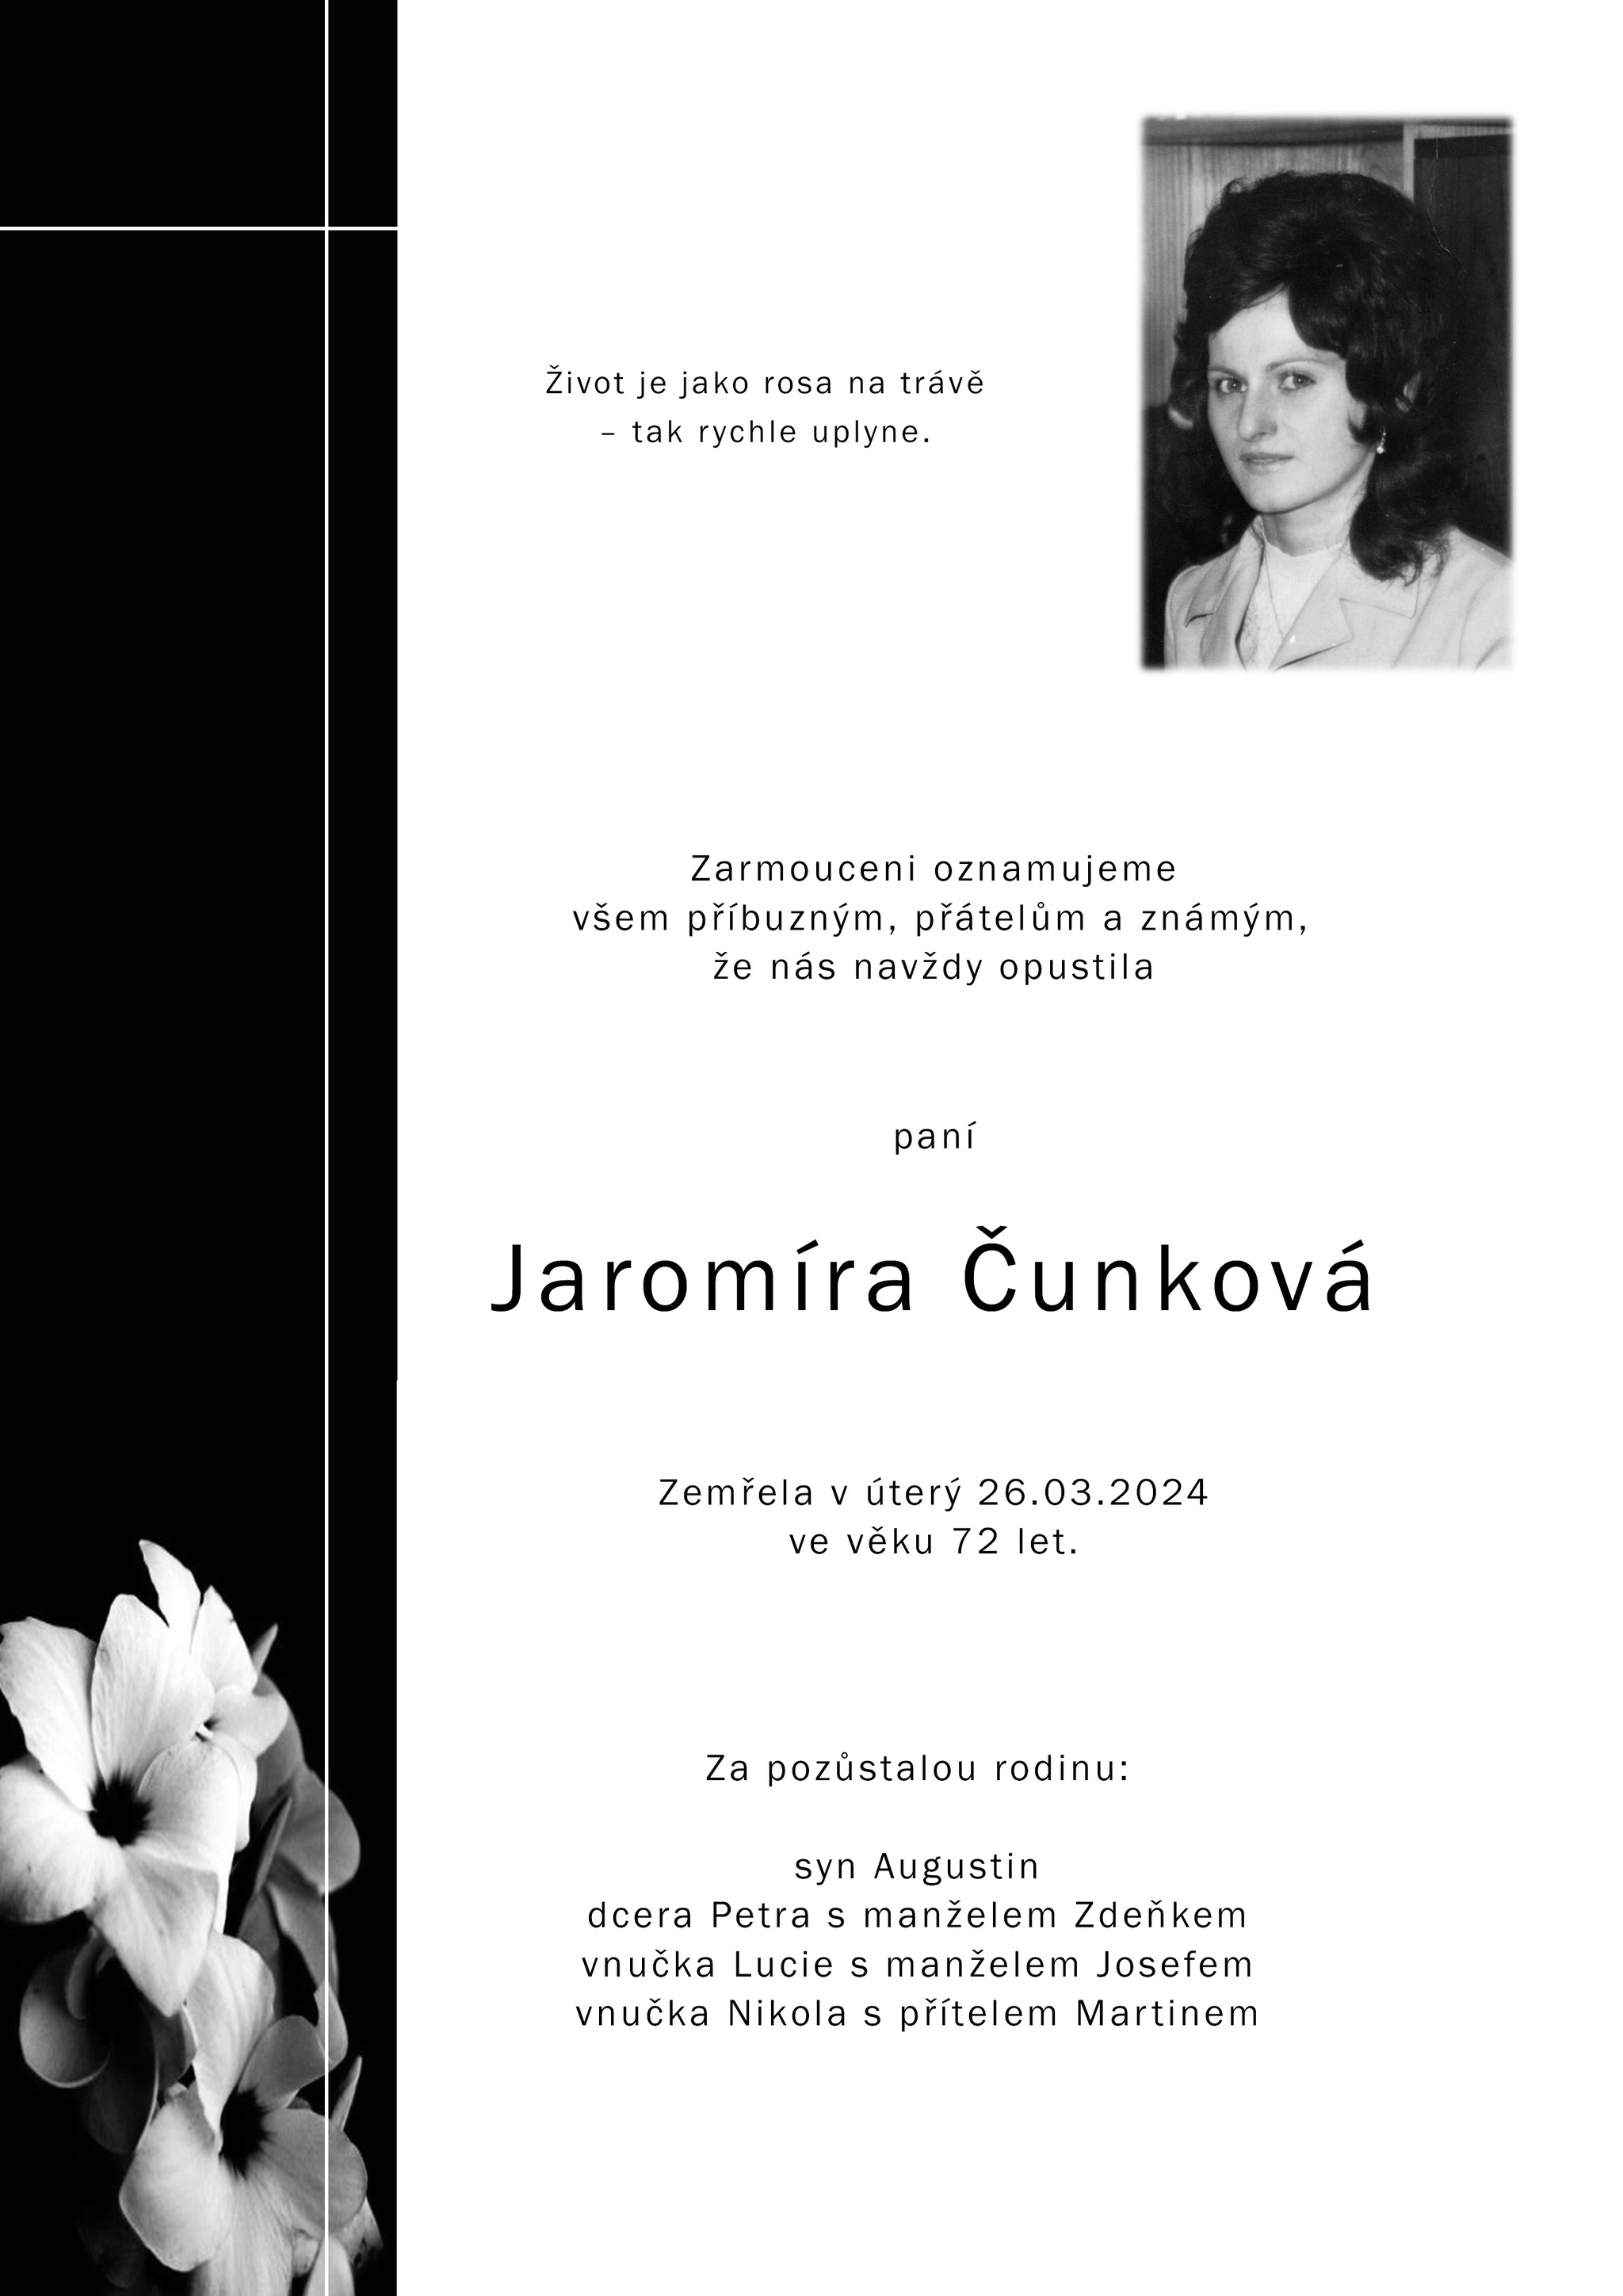 Jaromíra Čunková